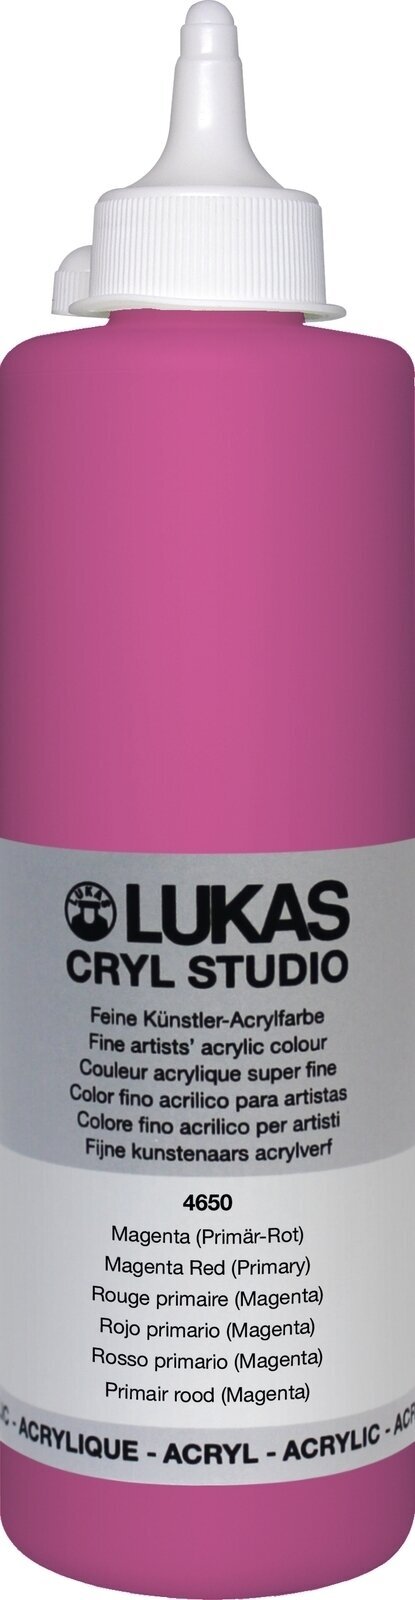 Acrylfarbe Lukas Cryl Studio Acrylfarbe 500 ml Magenta Red (Primary)